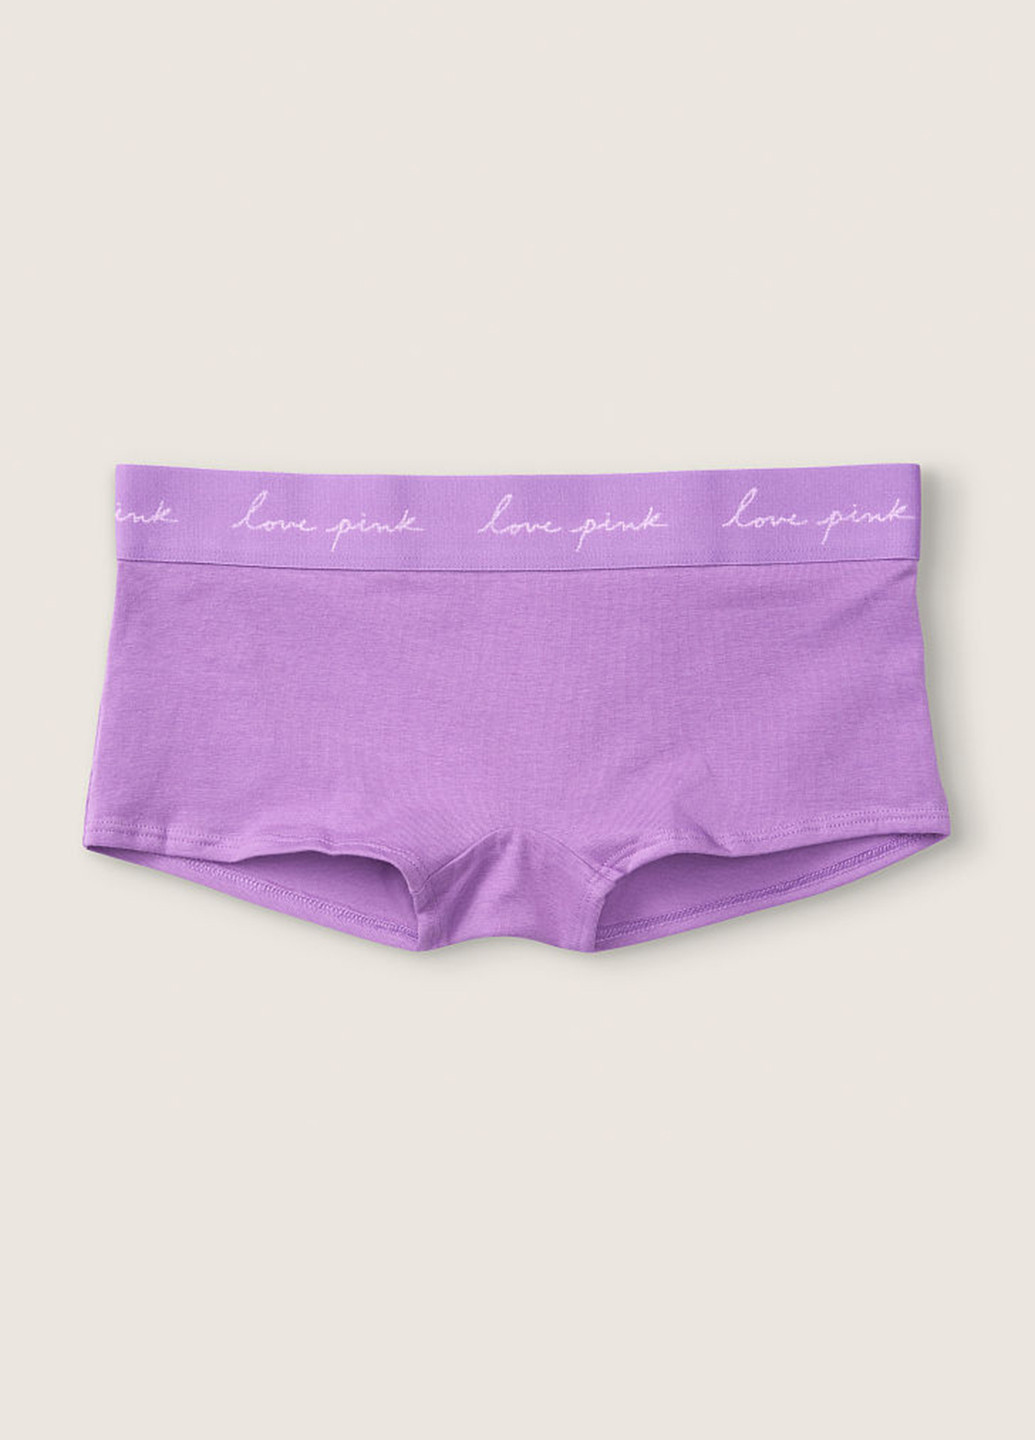 Трусики Victoria's Secret трусики-шорты надписи фиолетовые повседневные хлопок, трикотаж